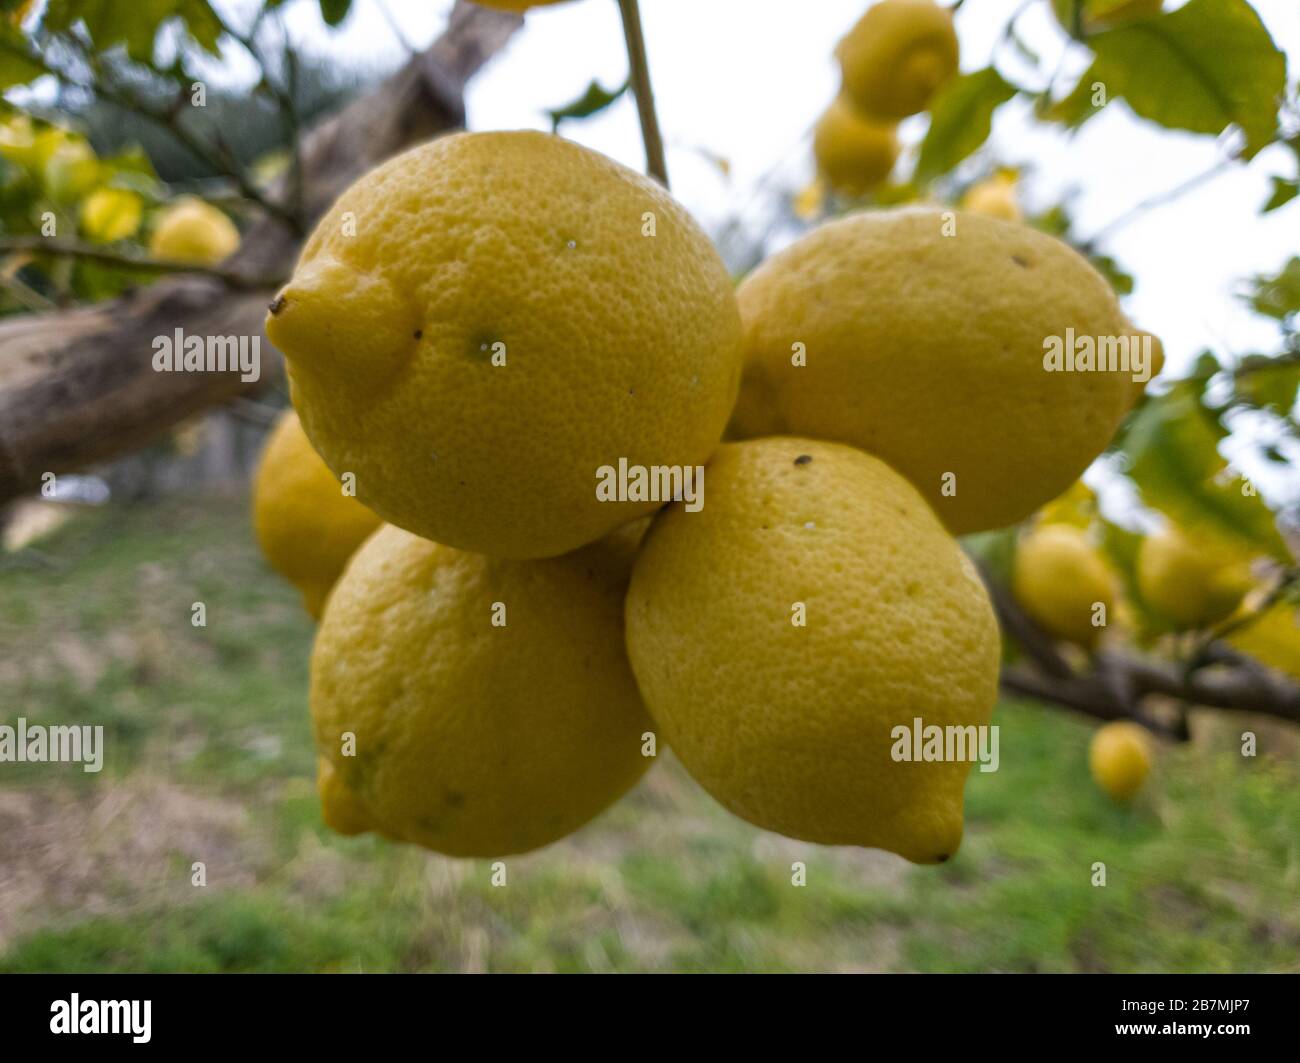 Tasty genuine italian multiple lemons, homemade genuine fruit,product  Stock Photo